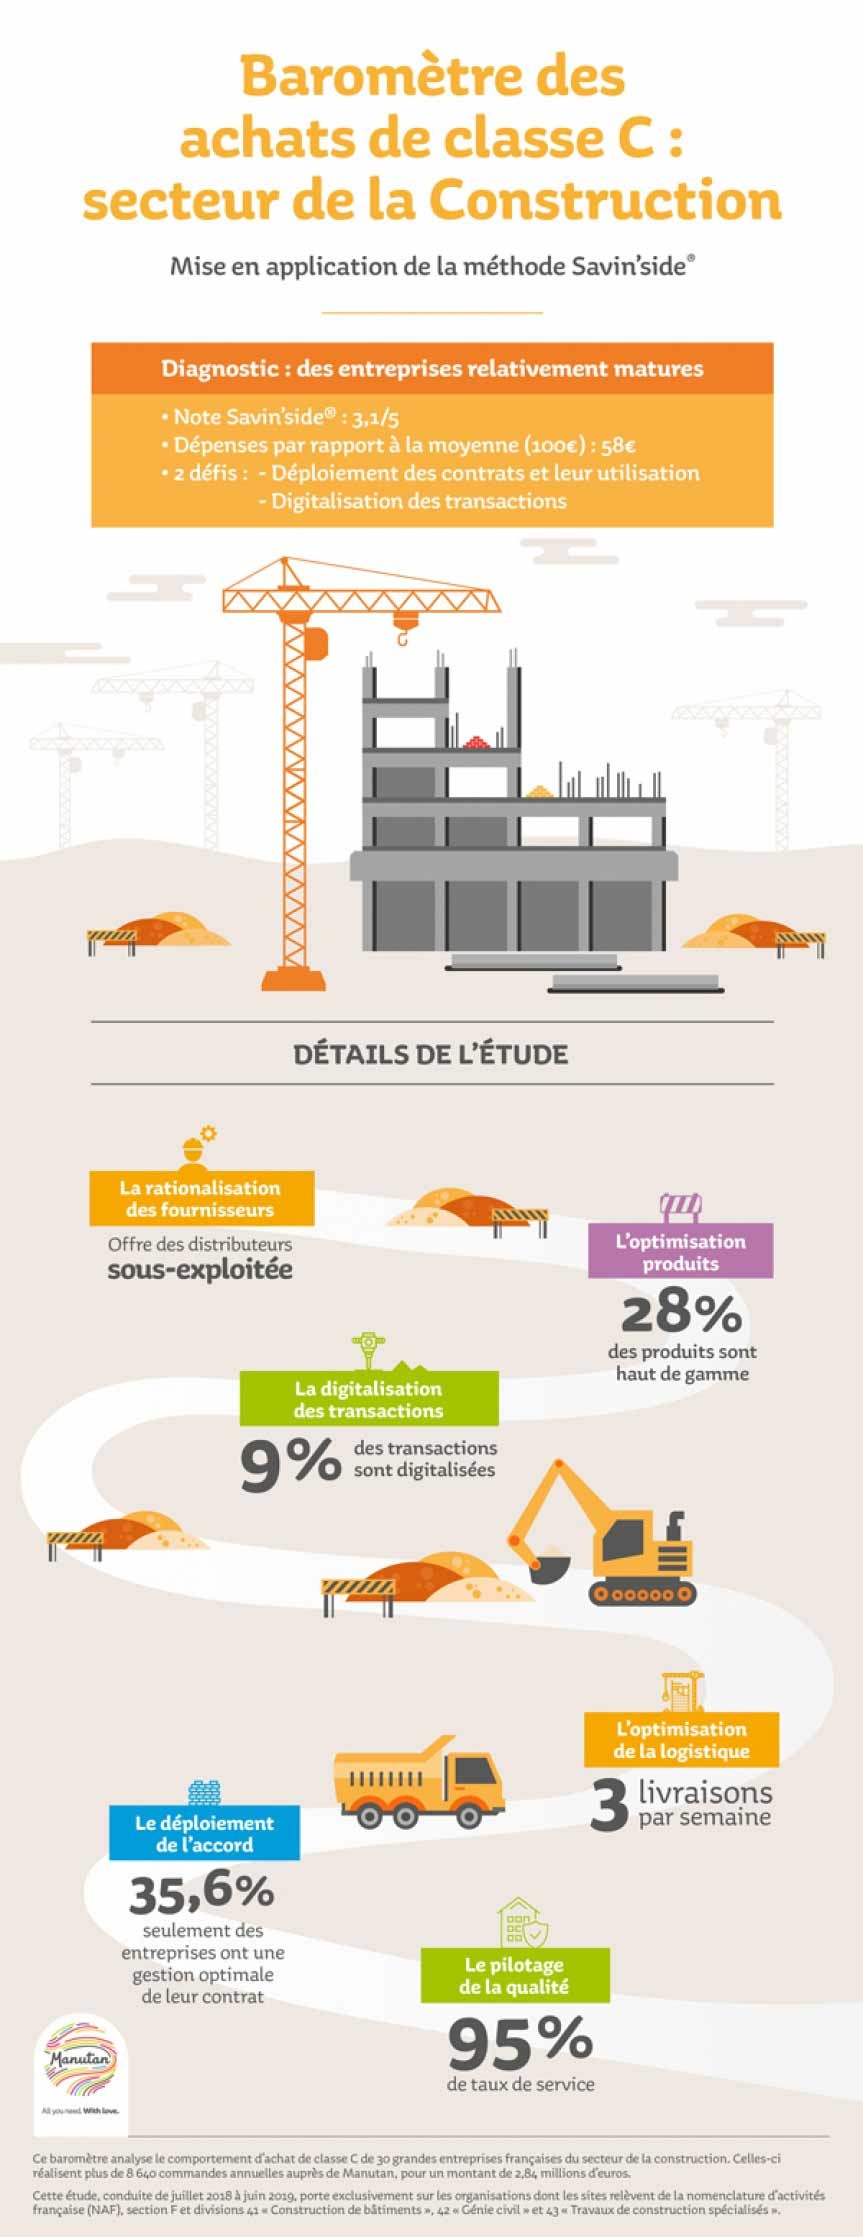 Infographie illustrant une Ã©tude en pourcentage des achats de classe C dans le secteur de la construction